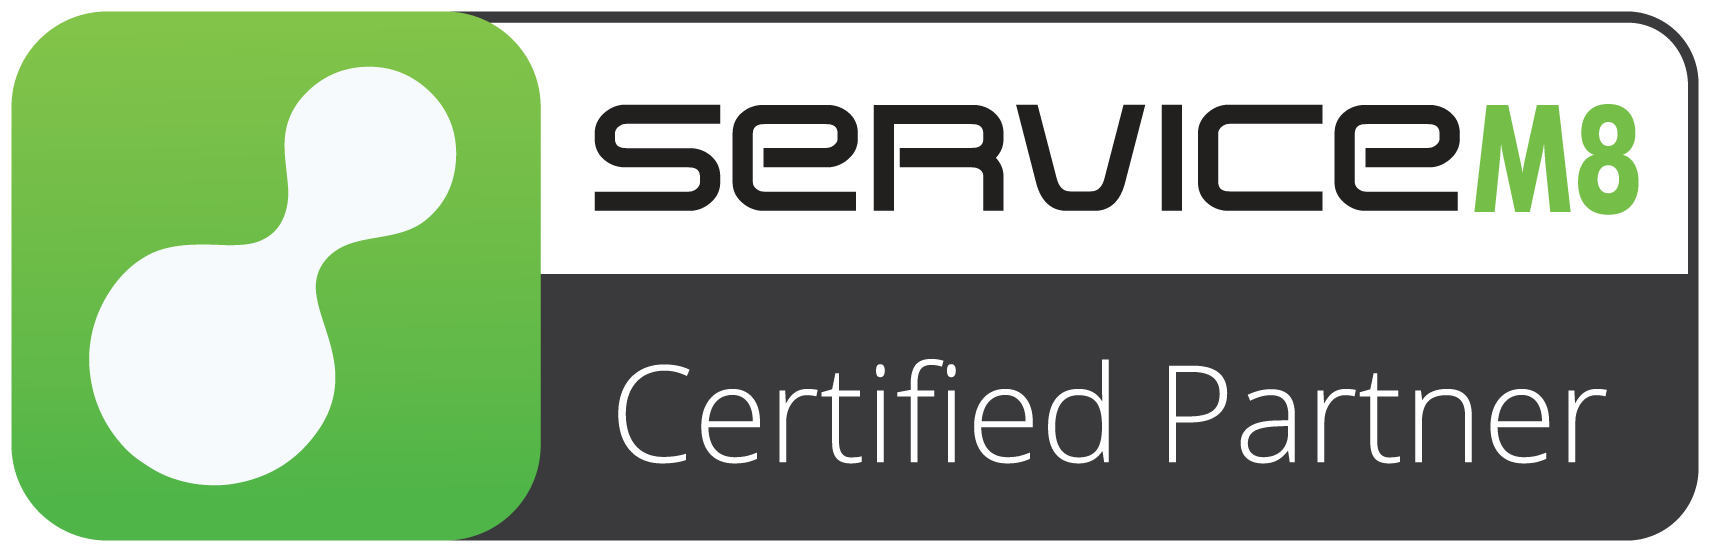 Certified ServiceM8 partner